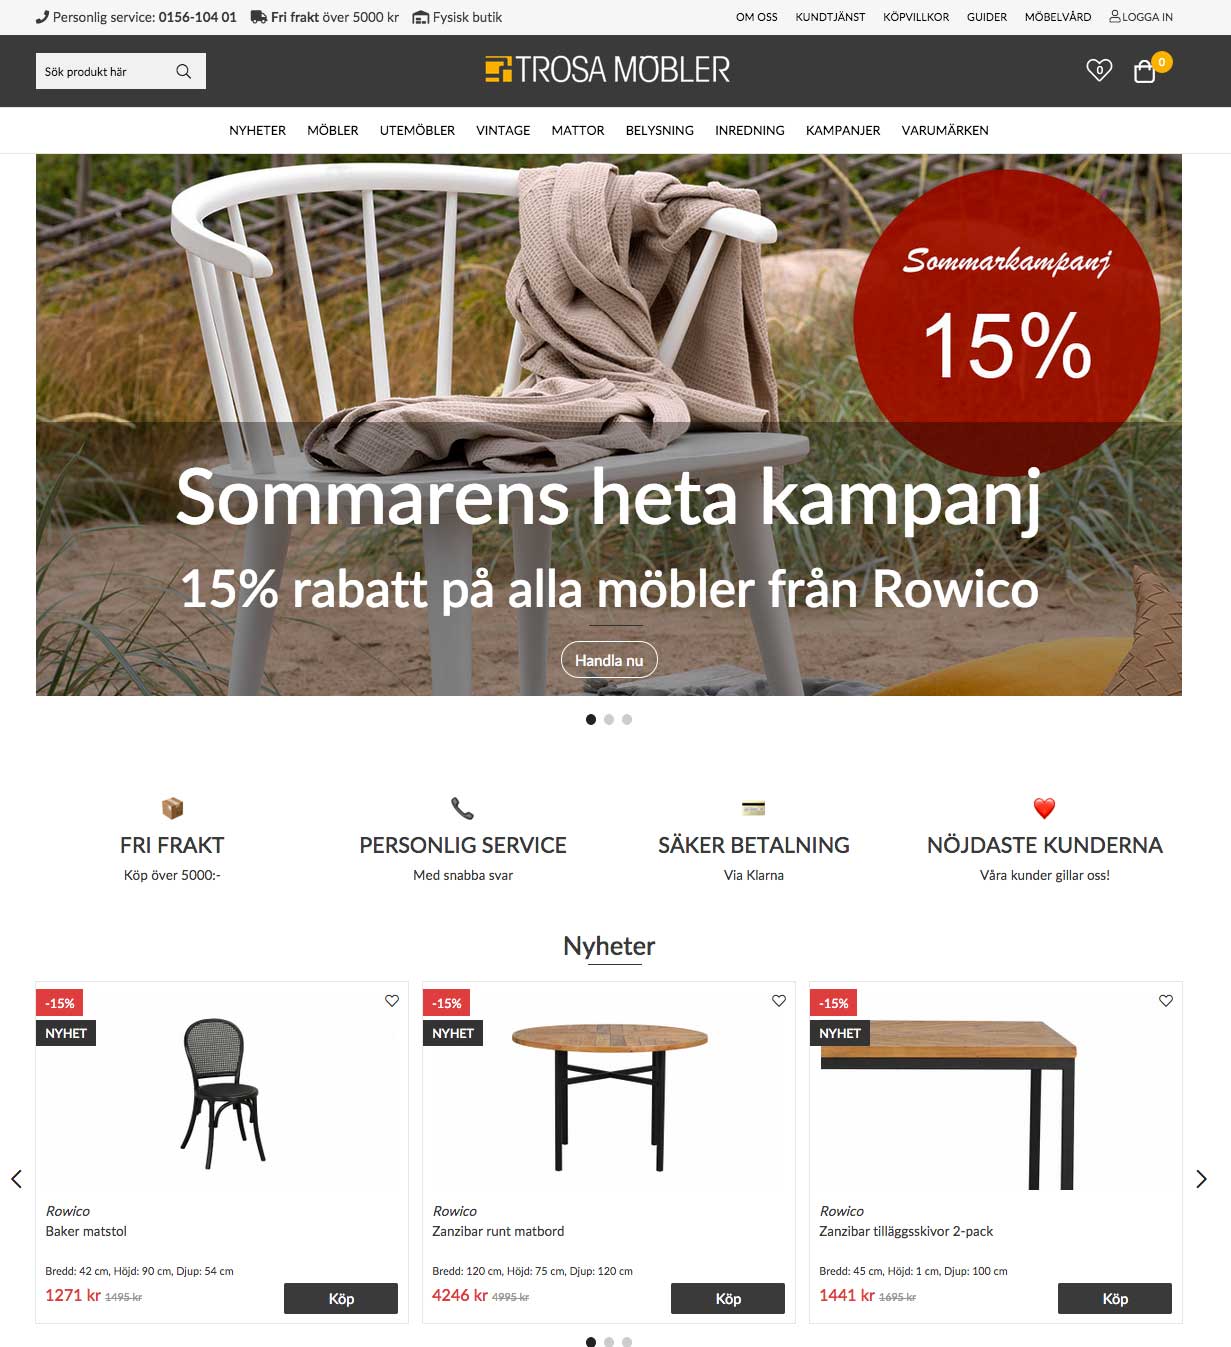 Trosa Möbler - ny e-handel med Askås